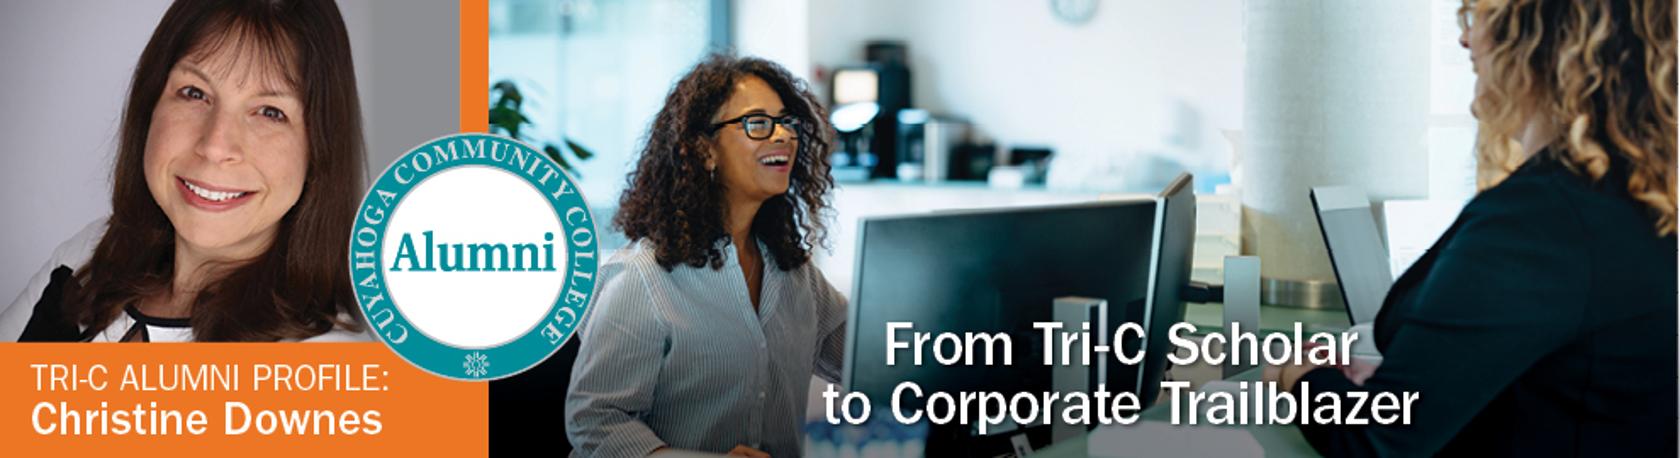 From Tri-C Scholar to Corporate Trailblazer